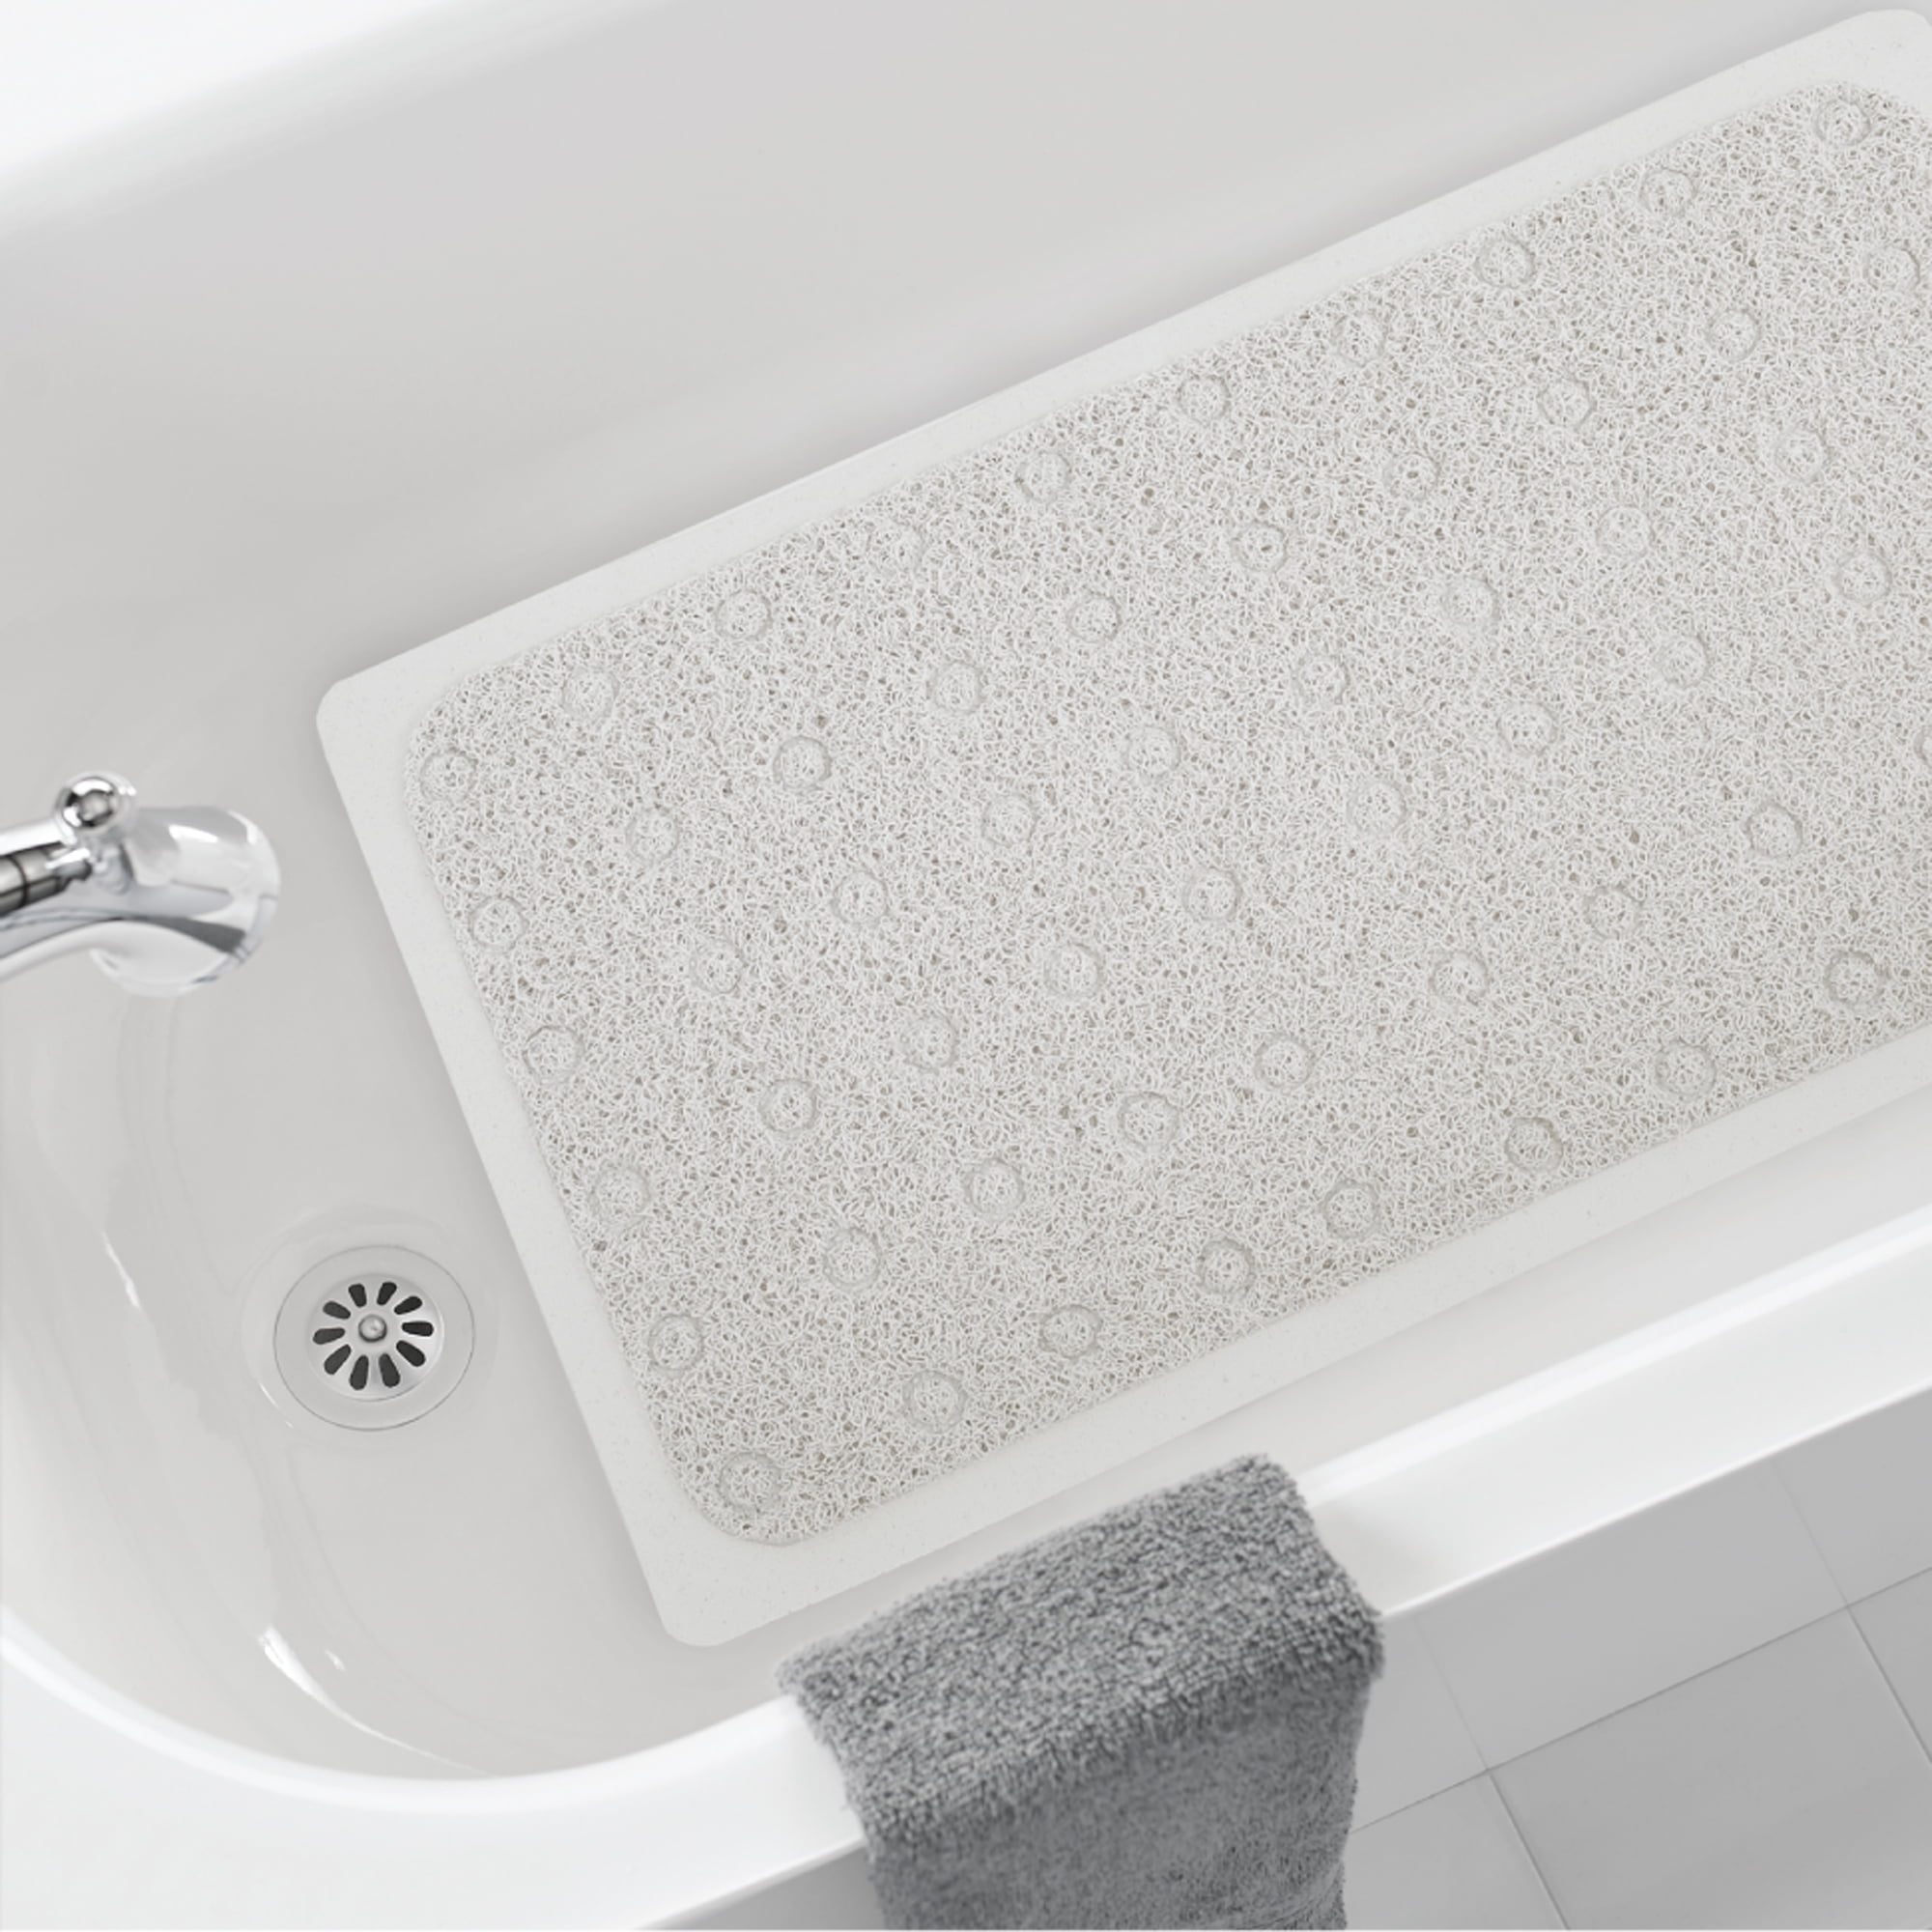 Clorox Anti-Microbial Cushioned Foam Bathtub Mat, White, 17 x 36